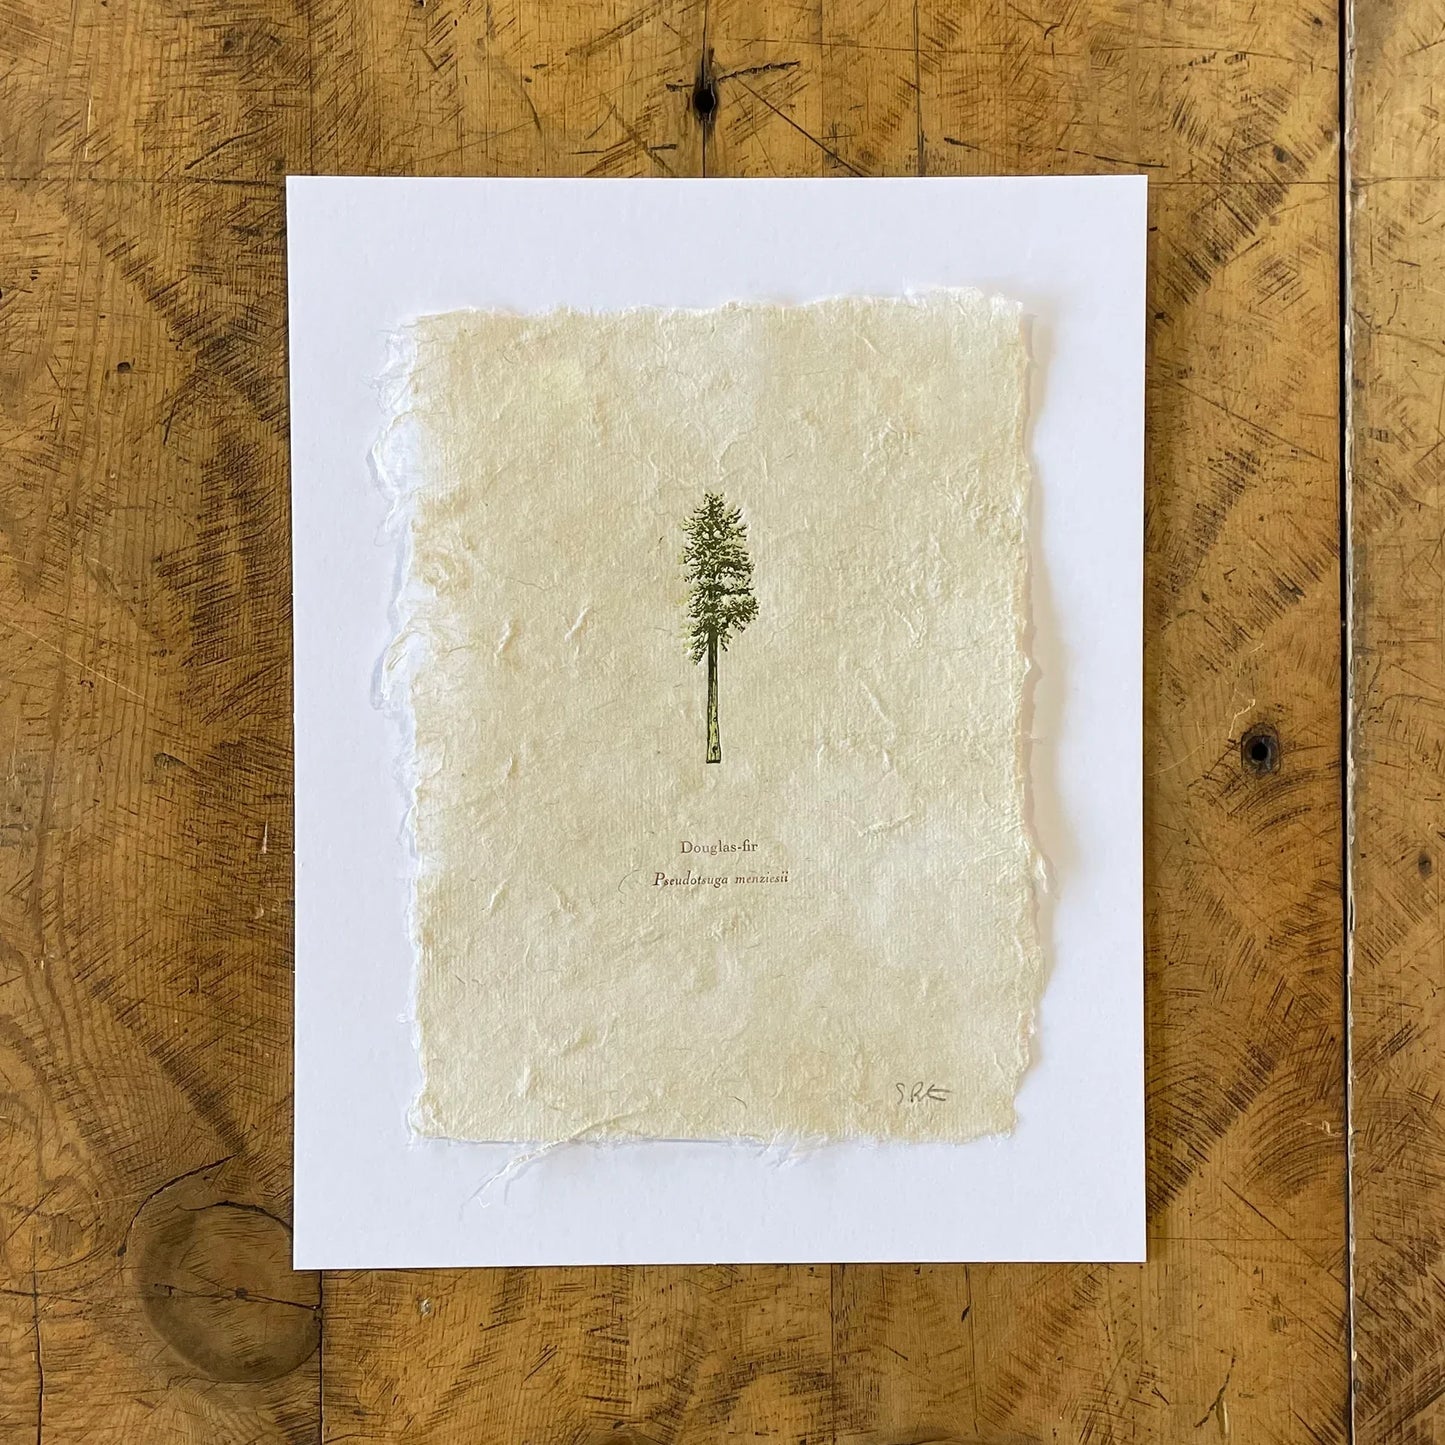 Framed - Douglas Fir Letterpress Print on Handmade Paper by Green Bird Press